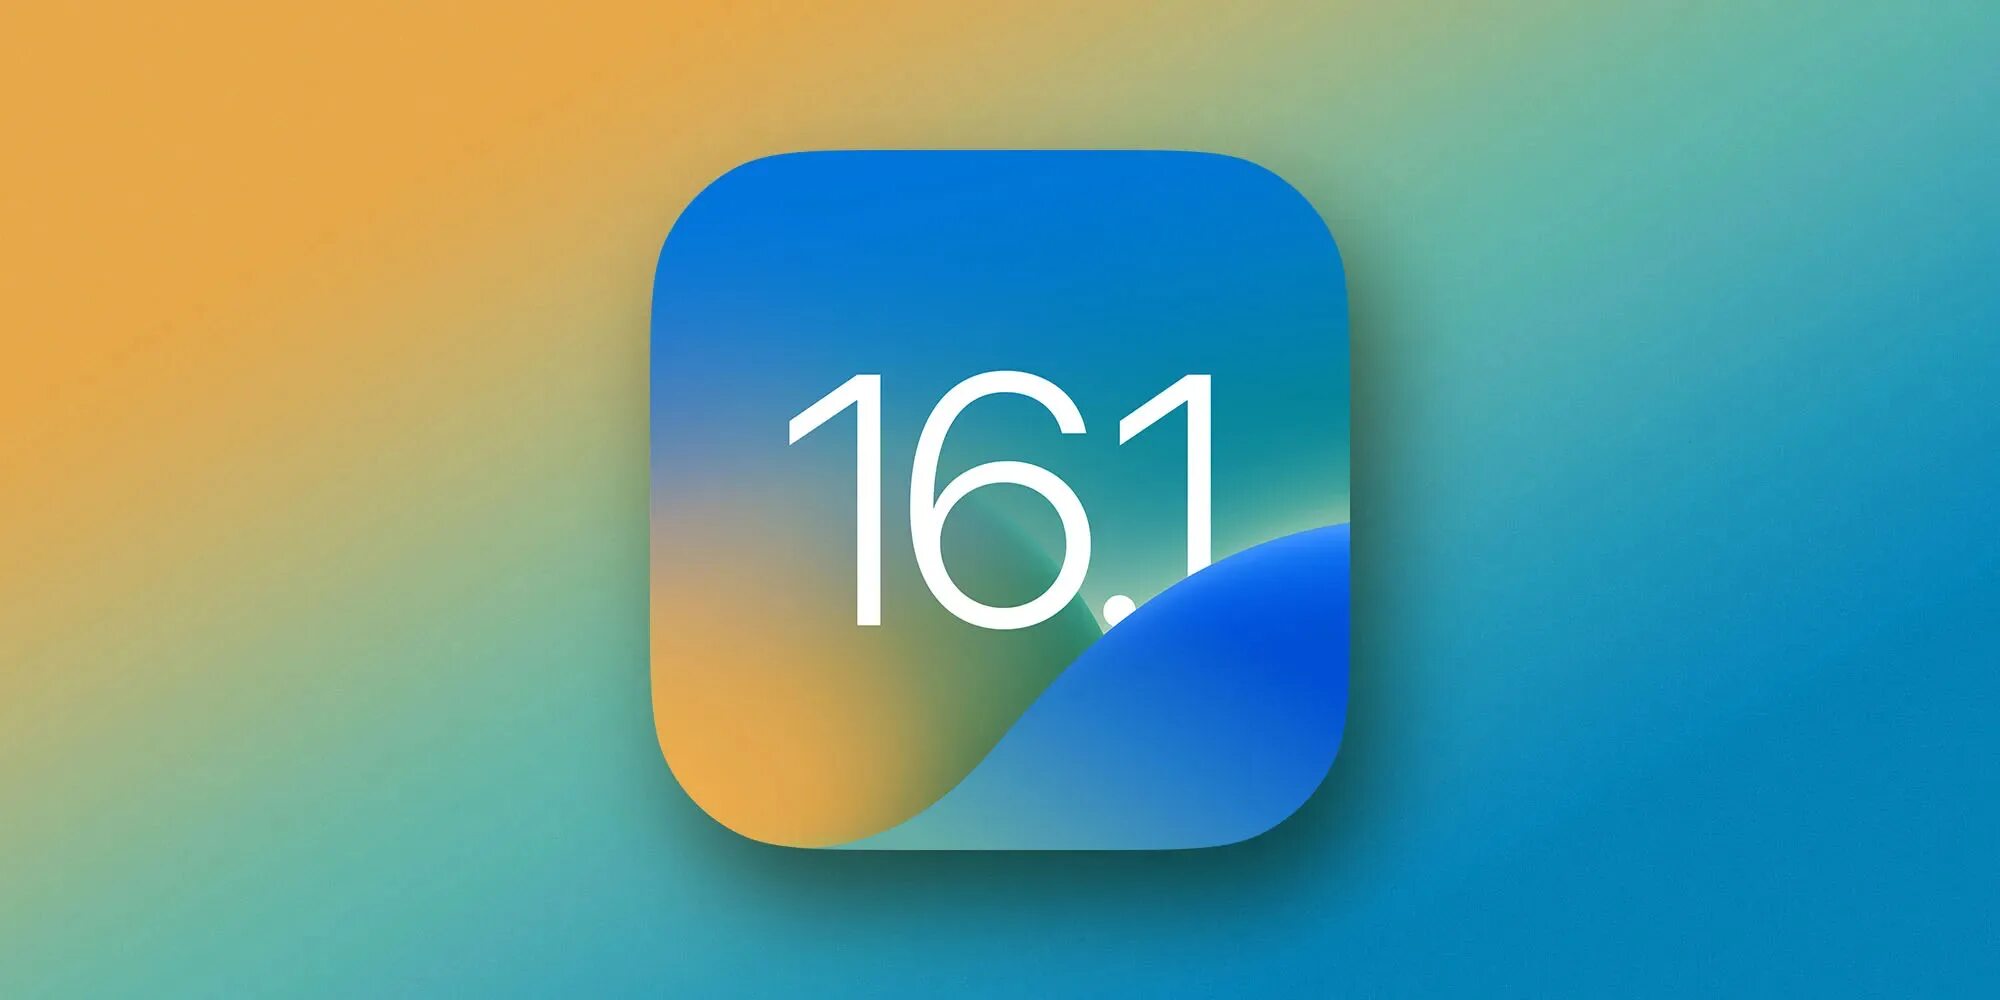 Айос 14. Иос 16. Айос 16.0.3. Apple выпустила новую версию IOS. Новое айфон ios 16